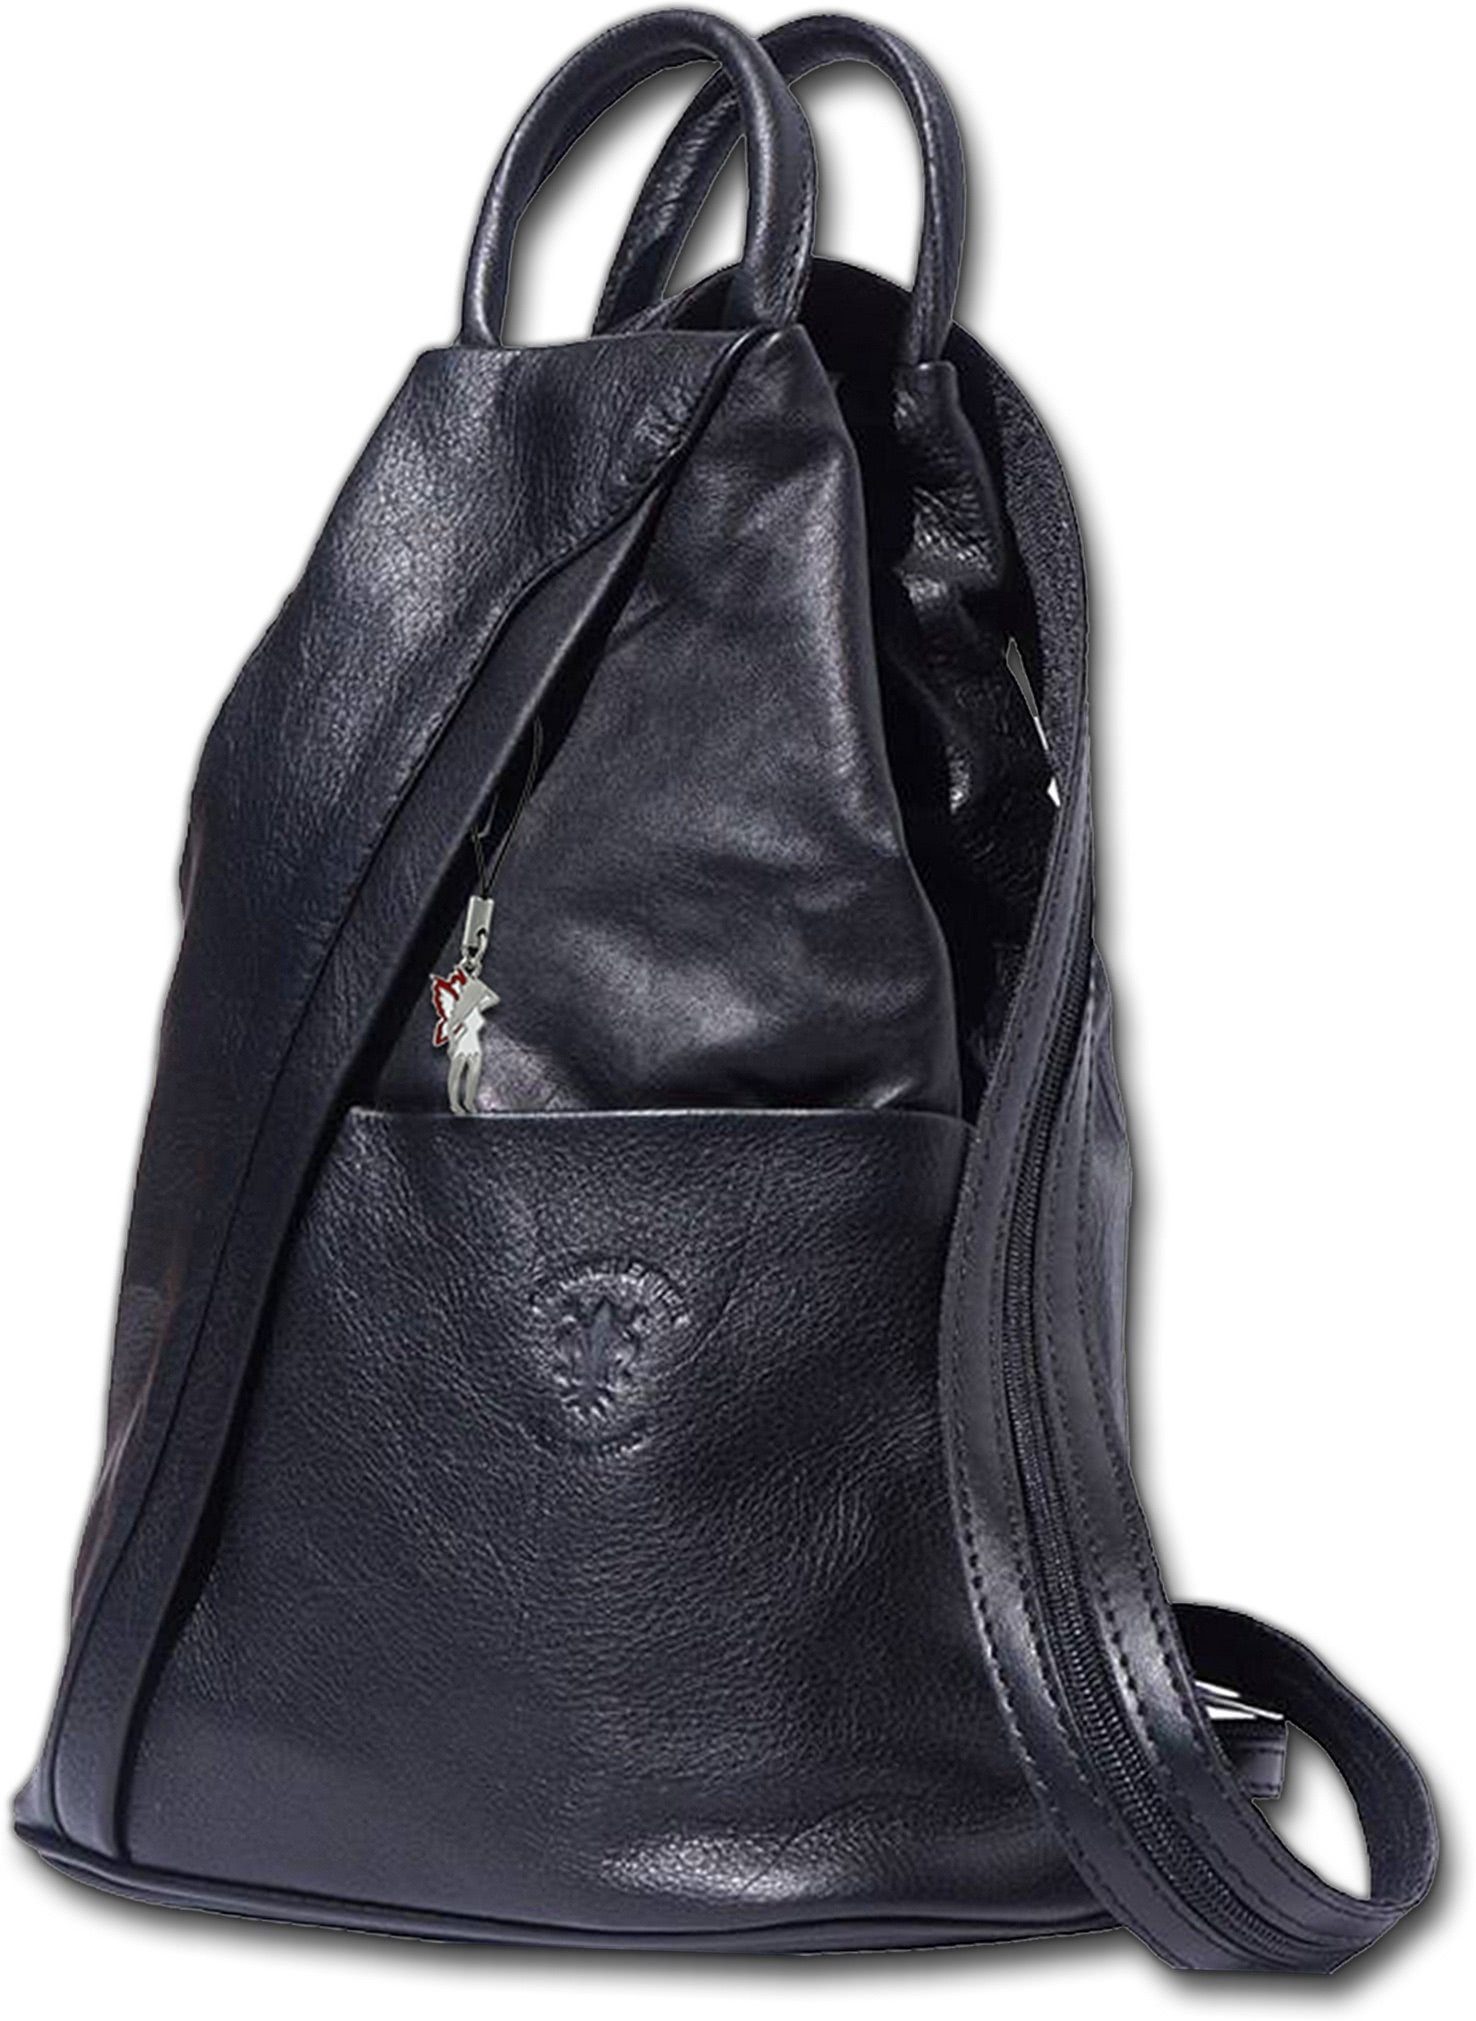 FLORENCE Cityrucksack Florence echtes Leder Damentasche (Schultertasche), Damen  Rucksack, Tasche aus Echtleder in schwarz, ca. 26cm Breite, Made-In Italy